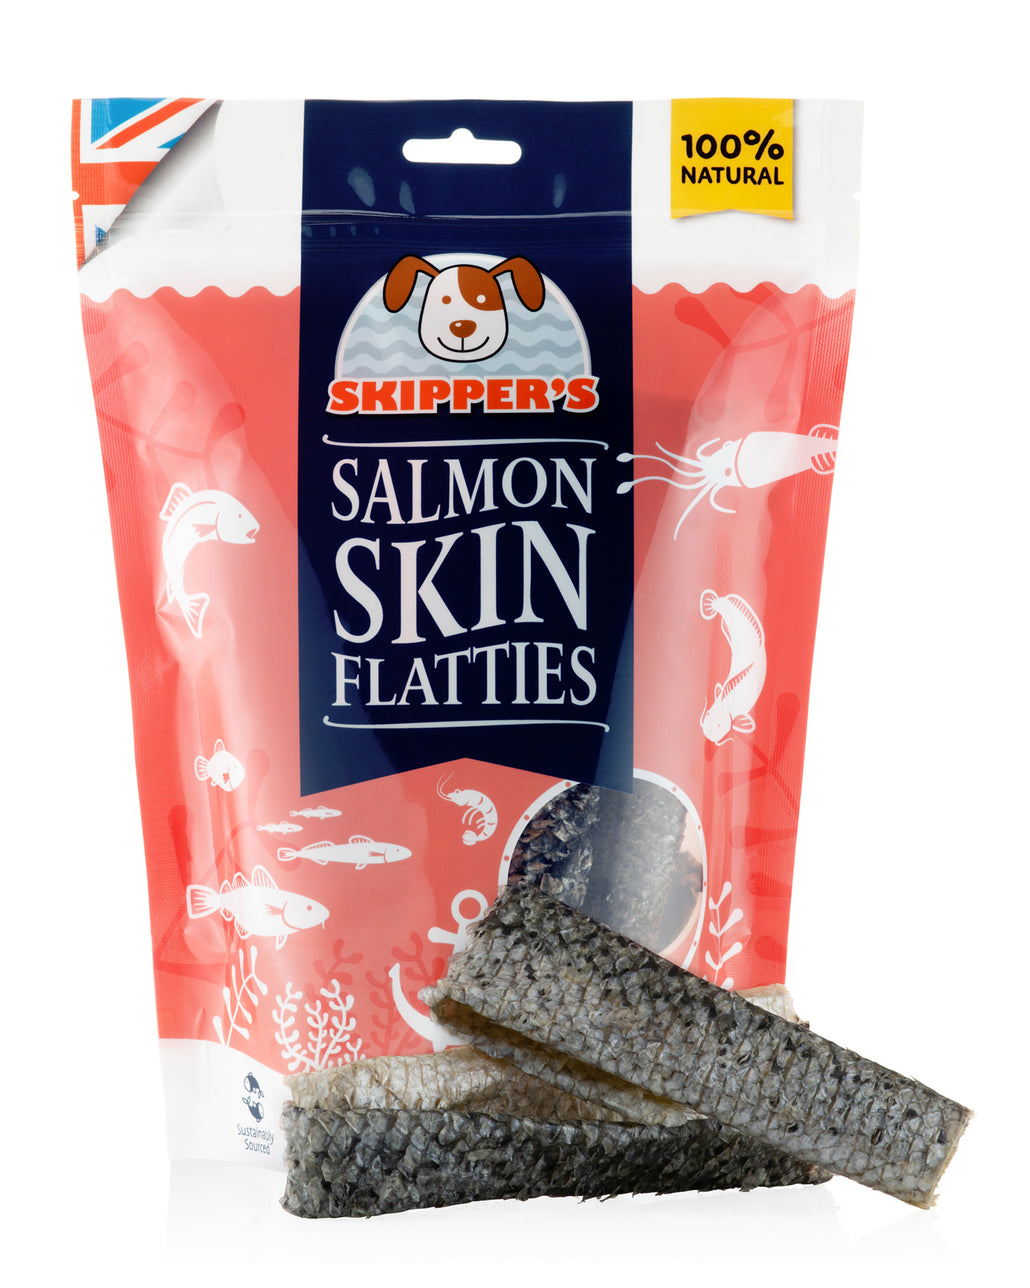 Salmon Skin Flatties